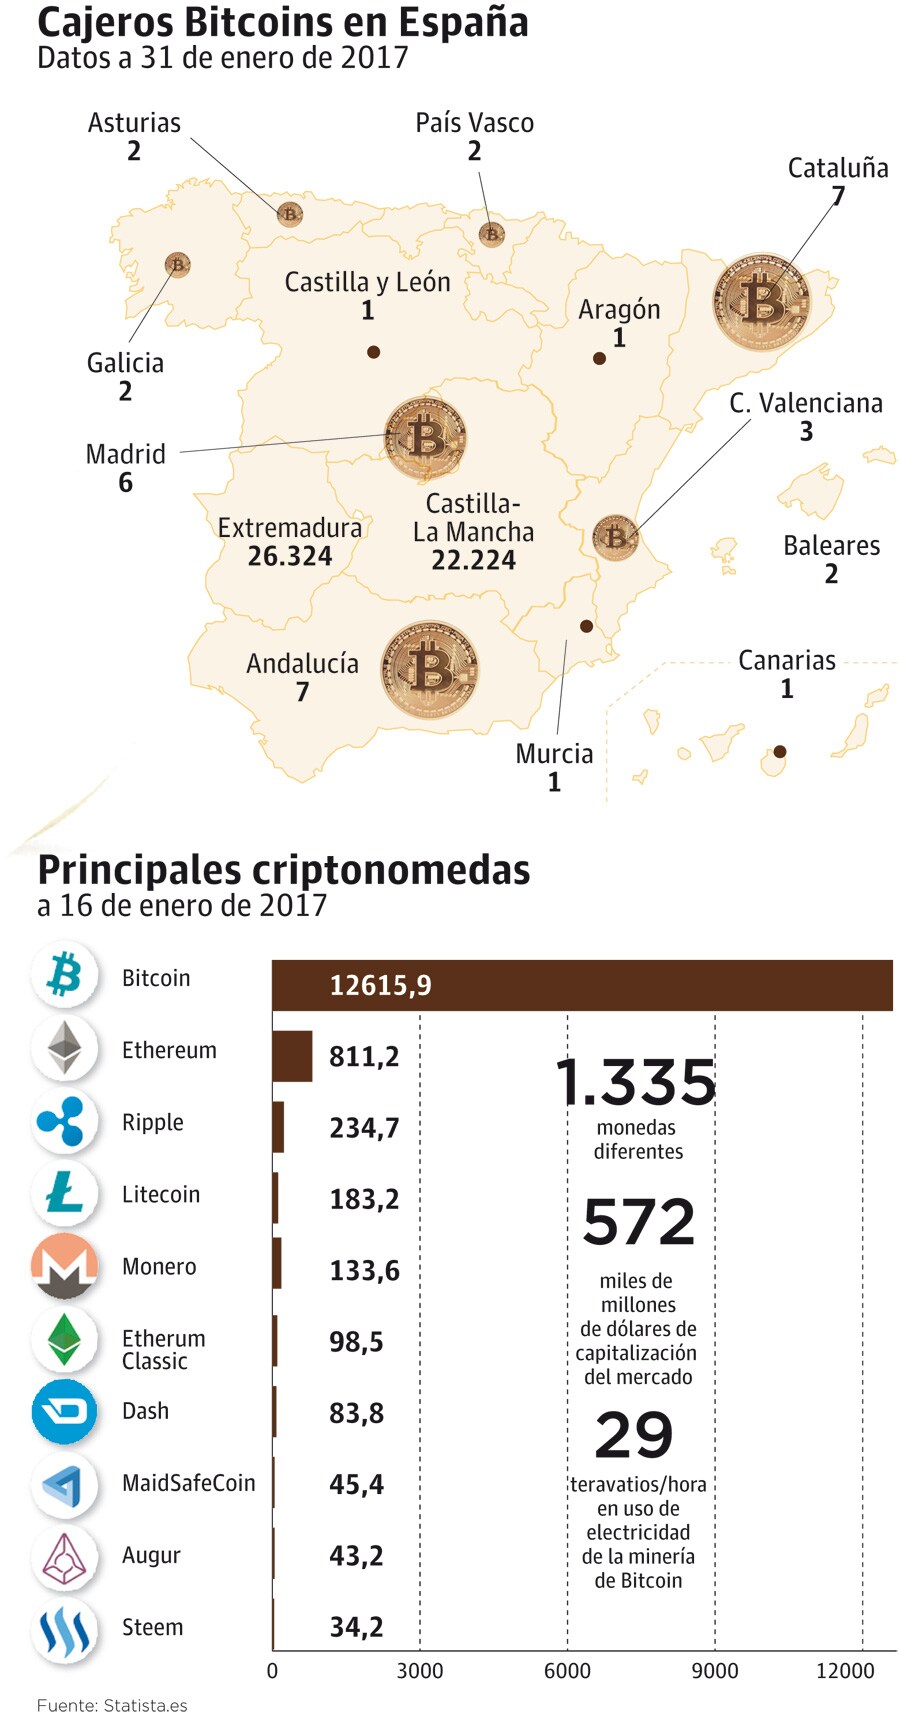 Fotos: Cajeros Bitcoins en España